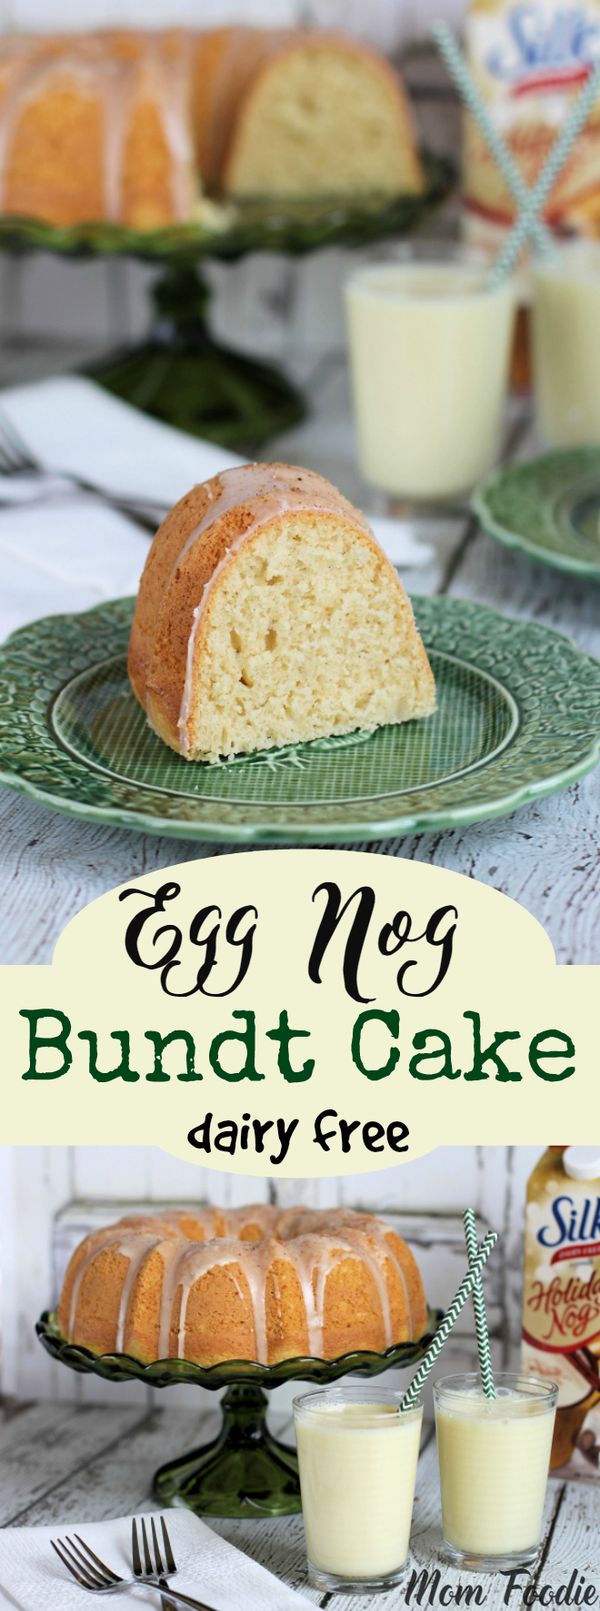 Eggnog Bundt Cake Recipe | A Non-Dairy Holiday Dessert